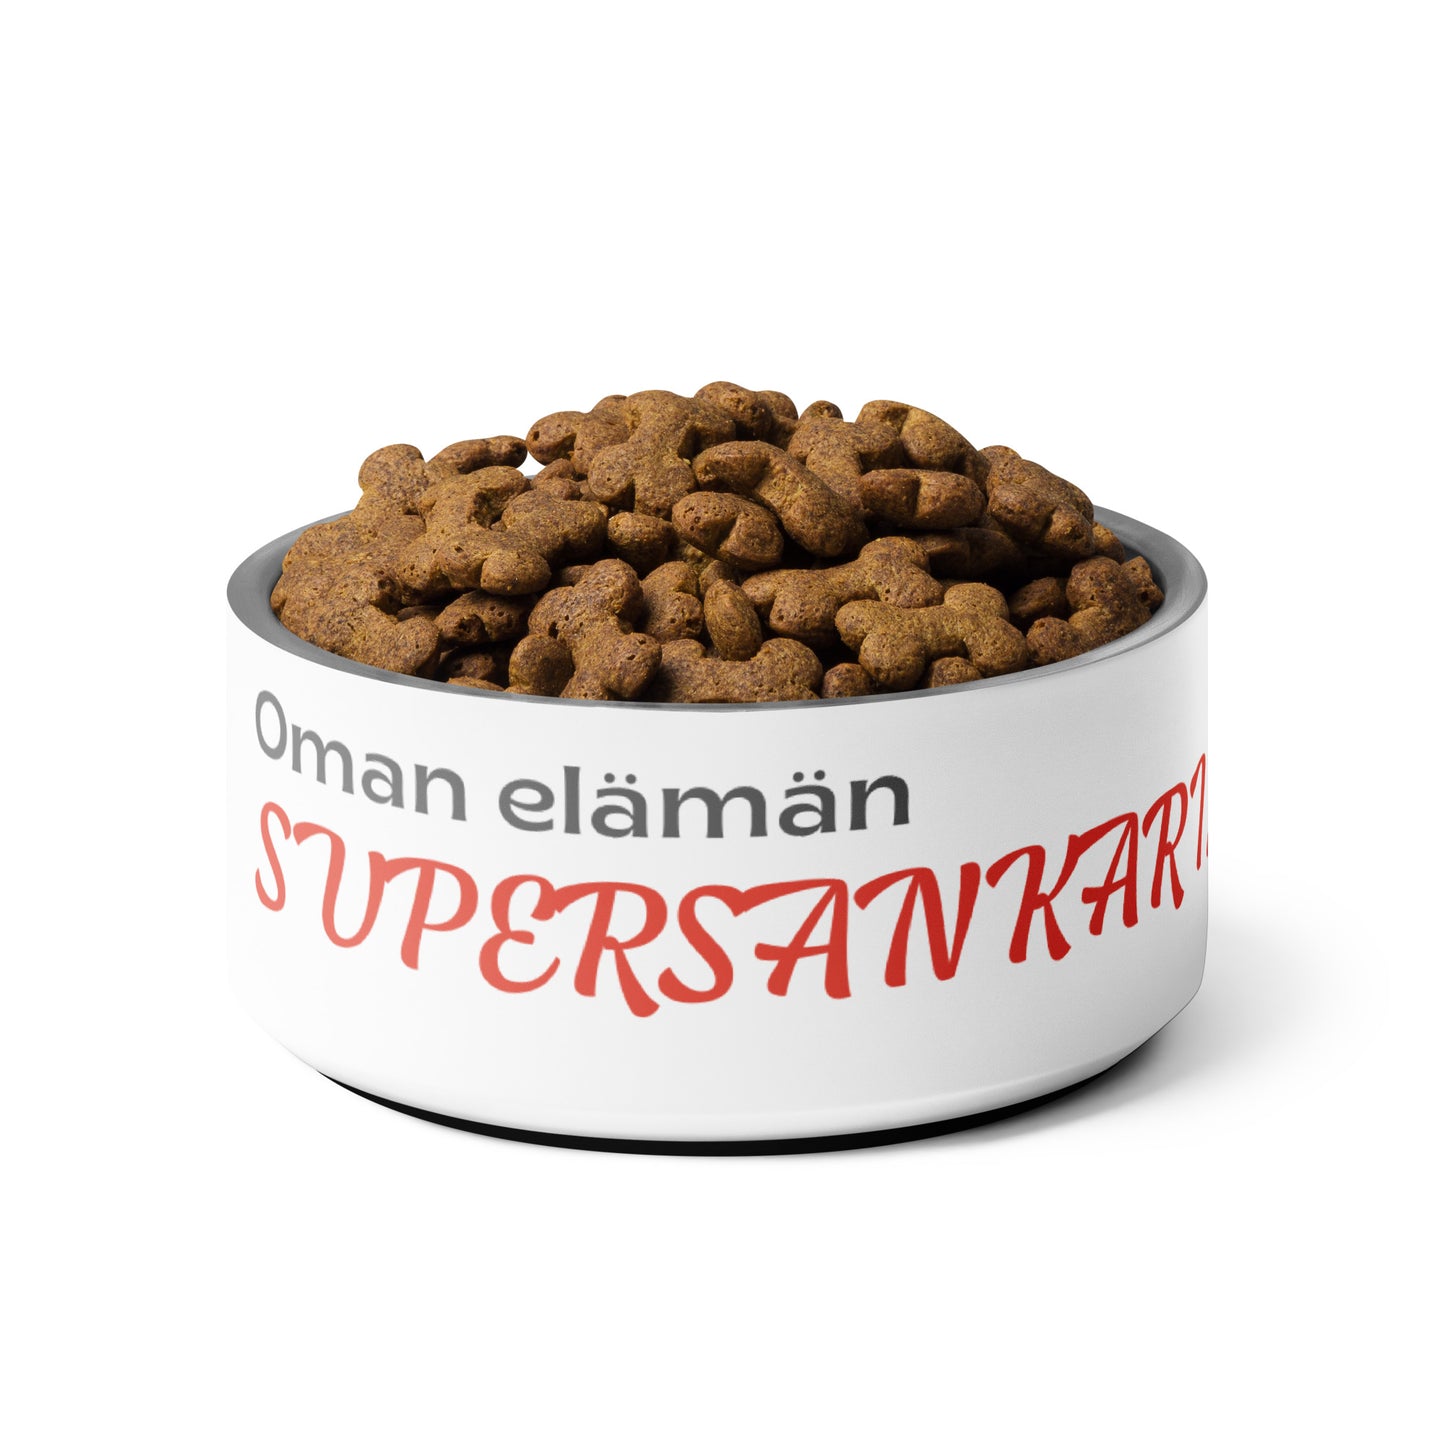 "Supersankari 2.0" koiran ruokakuppi